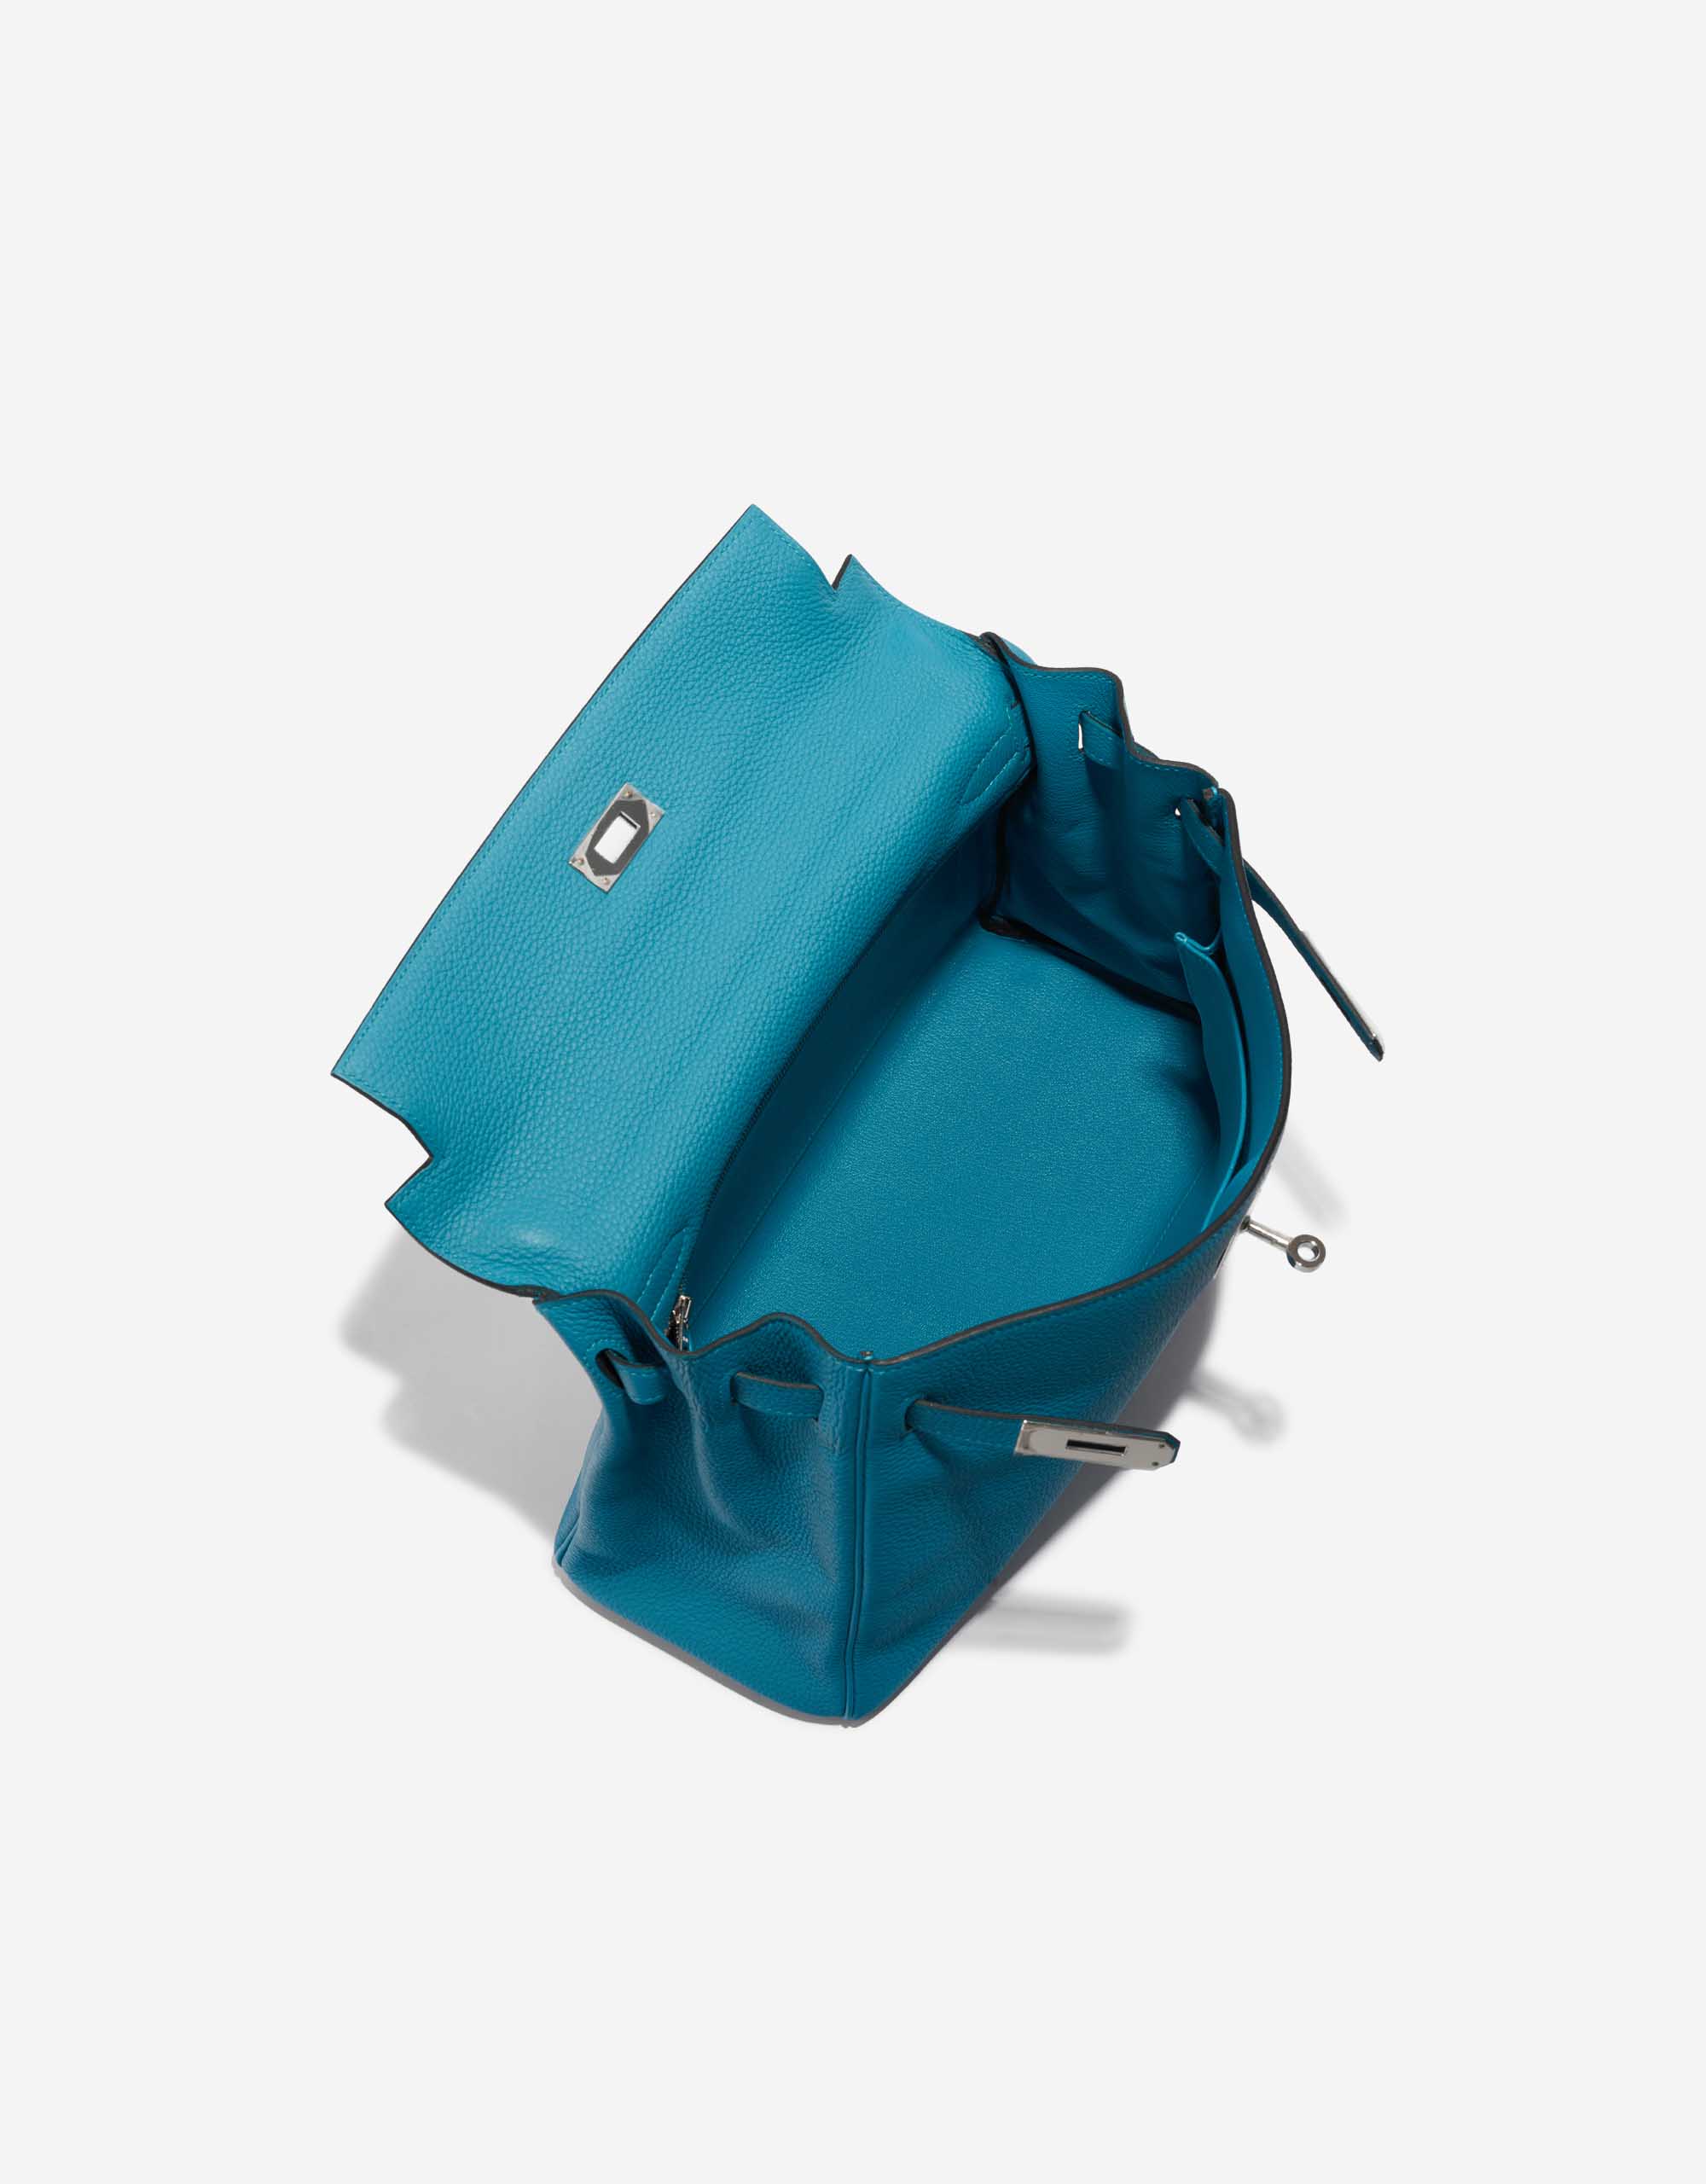 Hermes Kelly togo 7k gem blue Silver Hardware 32cm Full Handmade -  lushenticbags